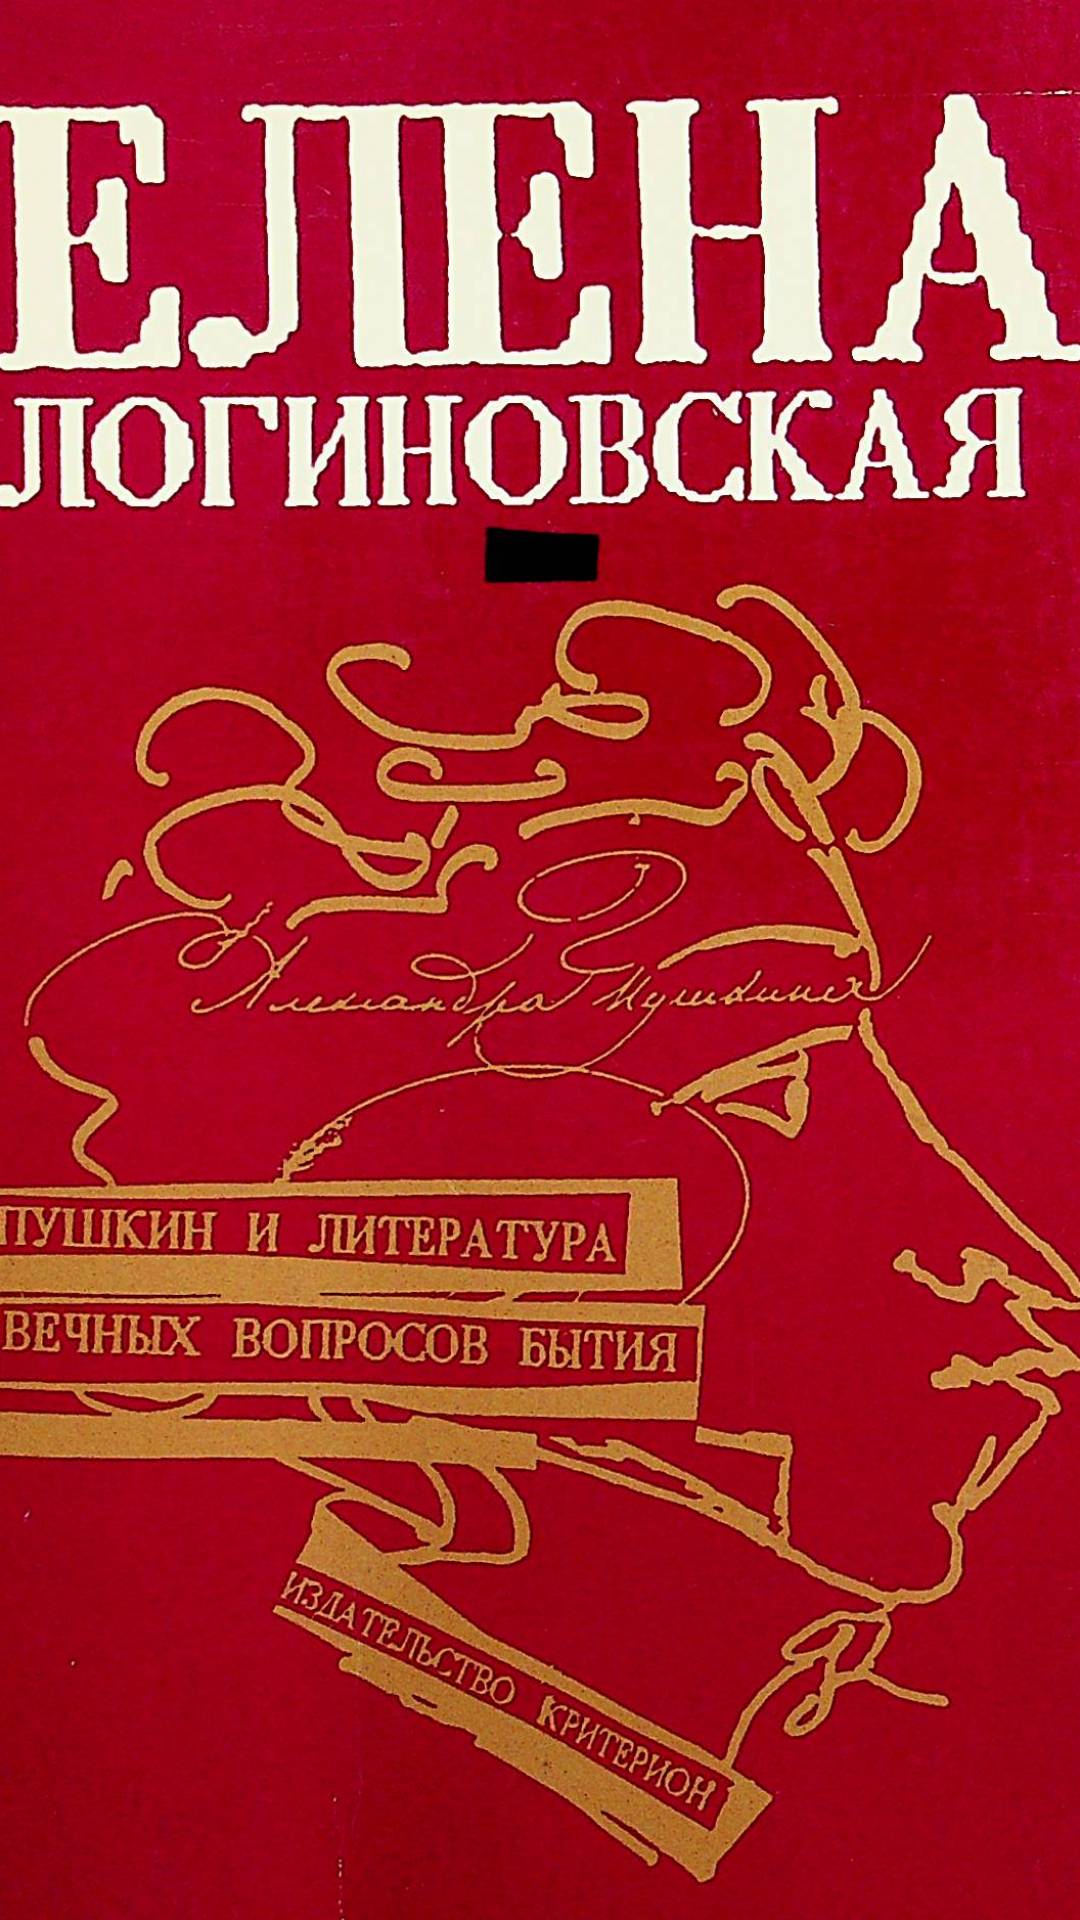 Пушкин и литература вечых вопросов бытия